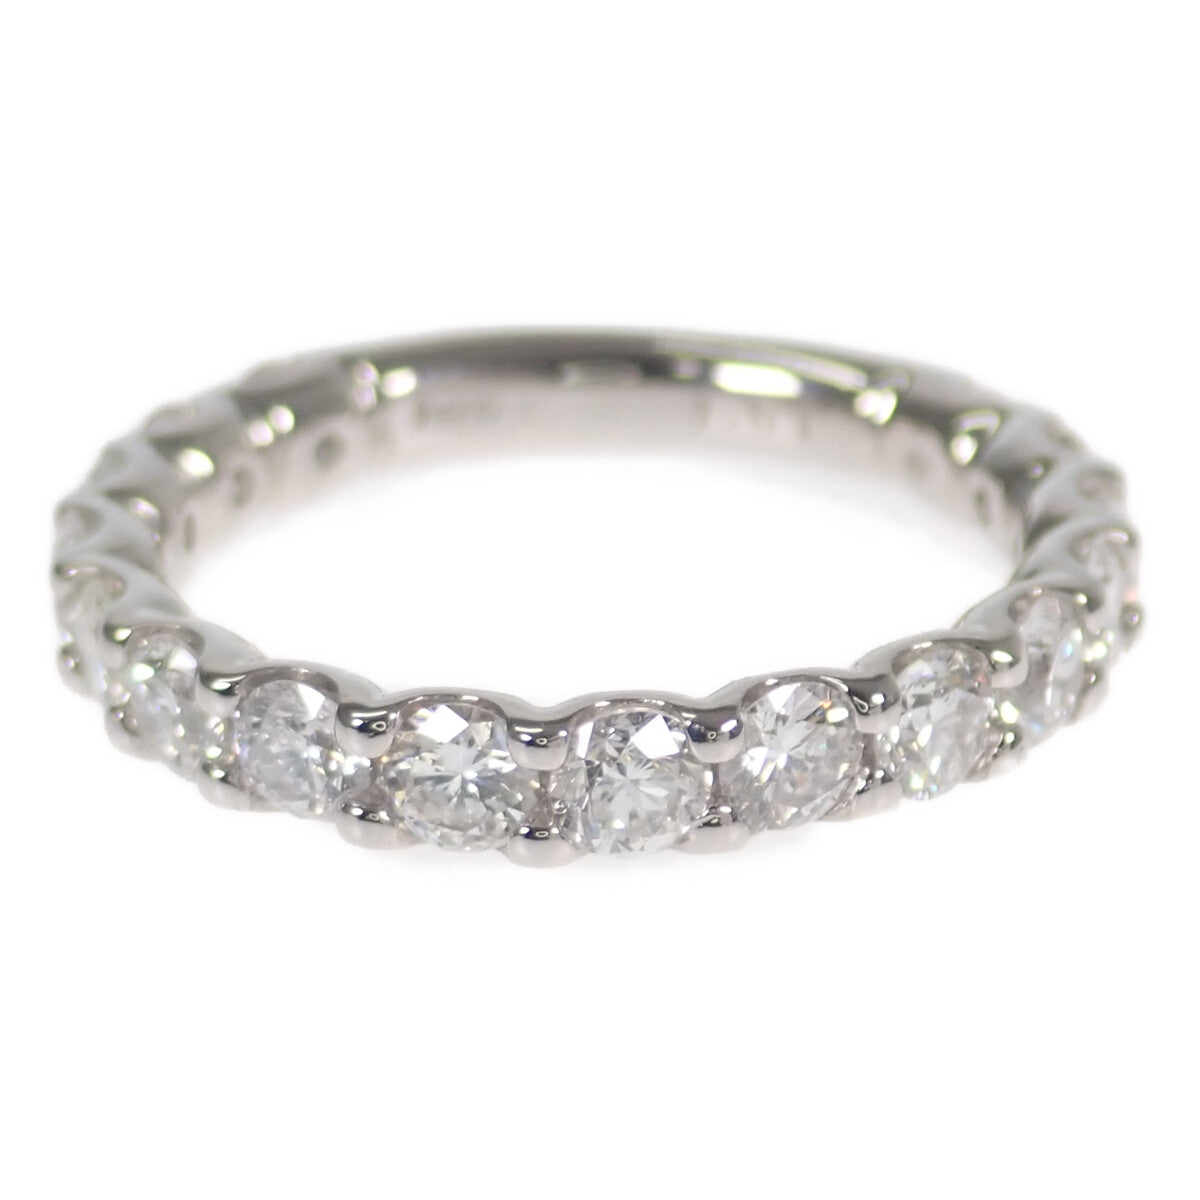 Ladies' Pt900 Platinum Three-Quarters Eternity Design Diamond Ring (1.51ct) – Size 11, Silver Tone, Preowned